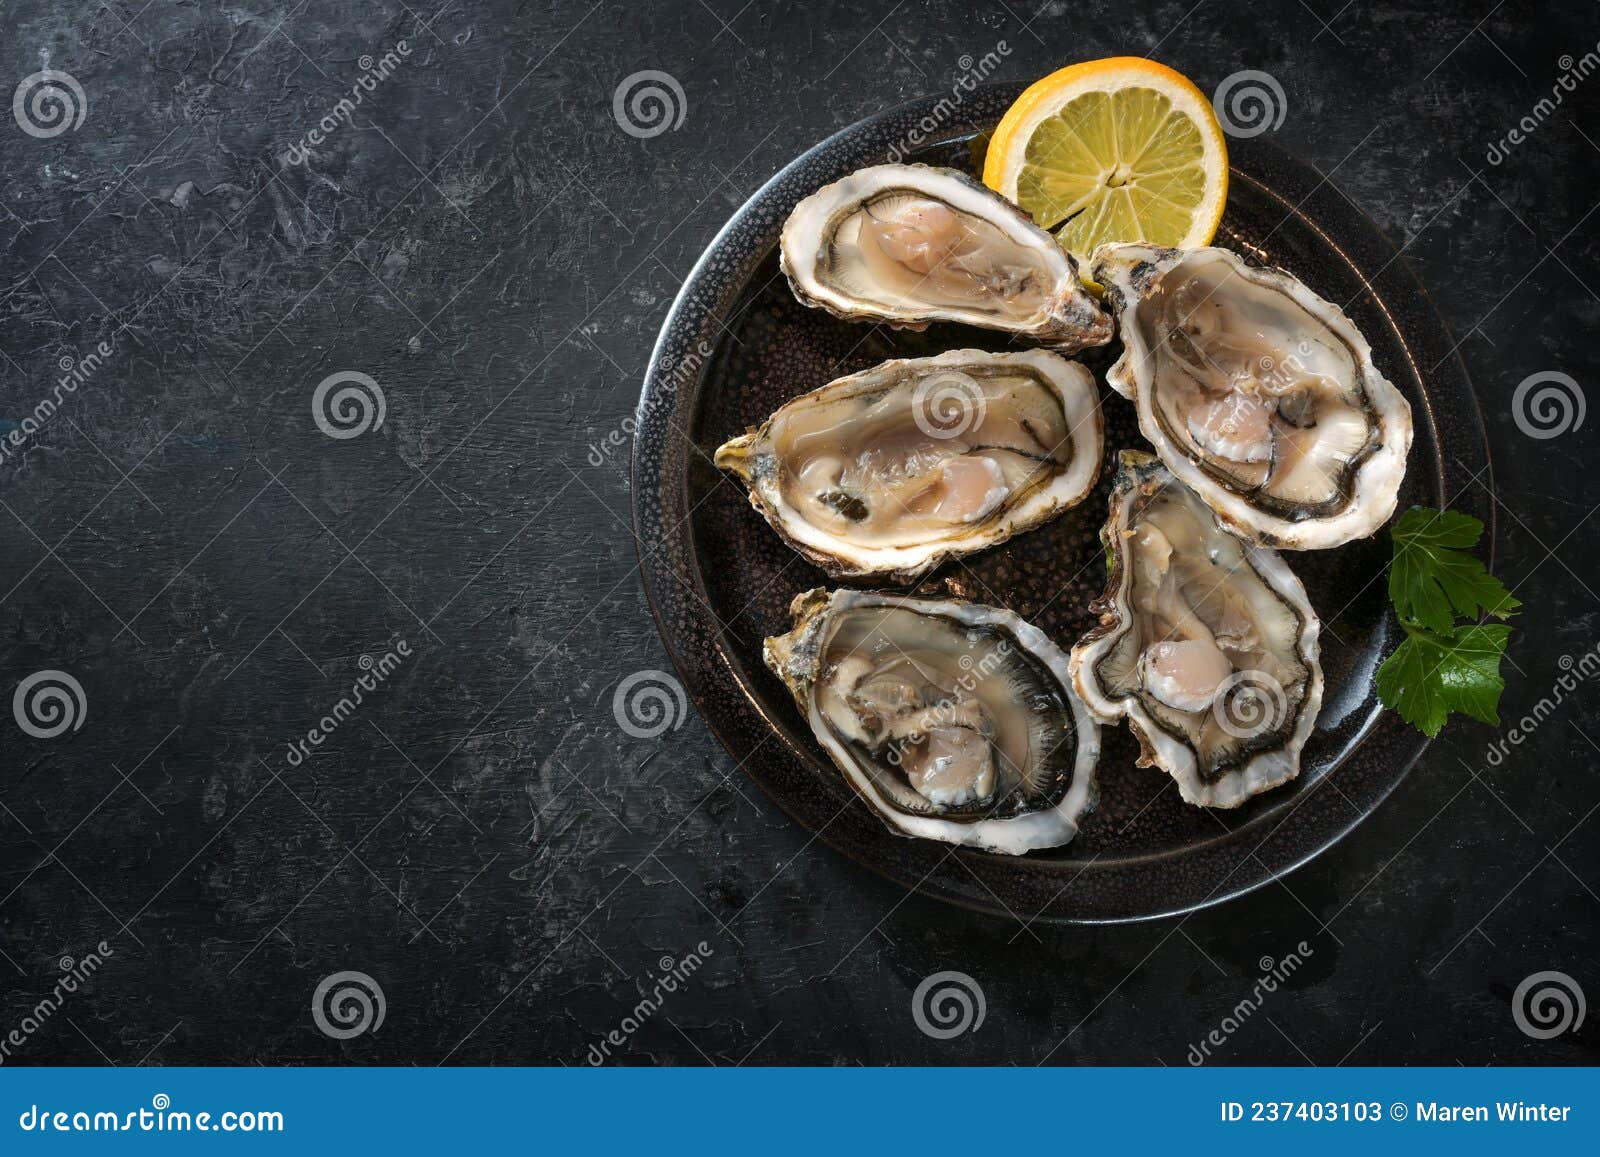 huîtres fraîches sur une assiette avec de la glace et des tranches